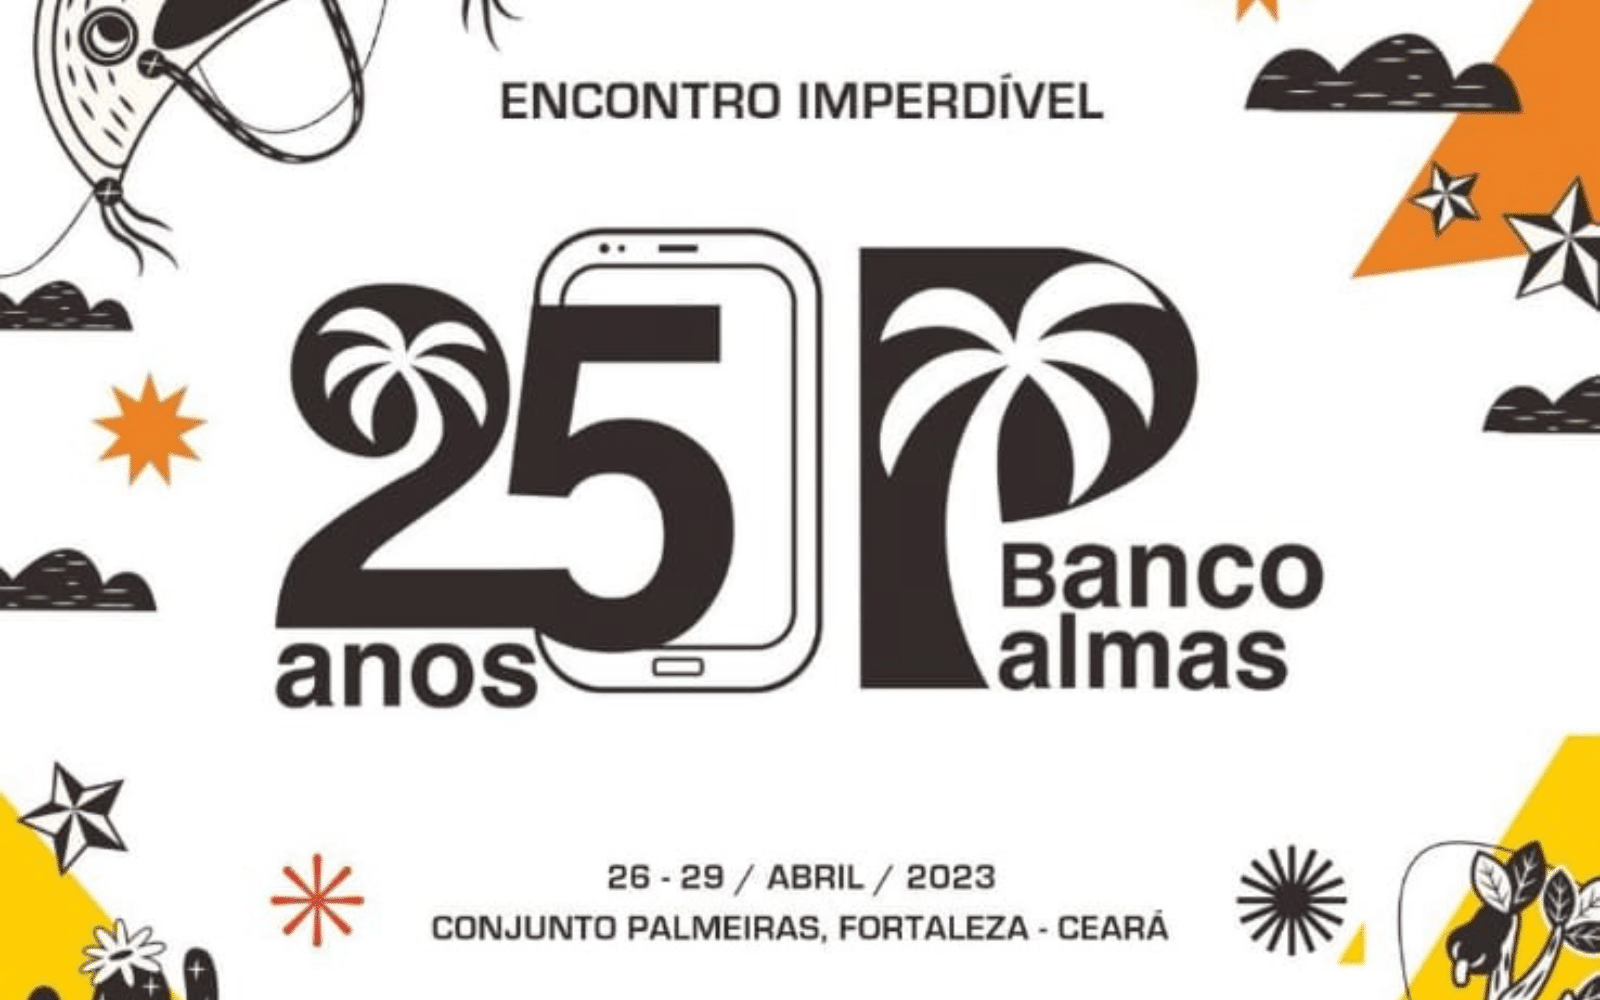 Ao centro da ilustração, está um celular, de onde sai o escrito "25 anos", com o número em destaque; à direita, está o logo do Banco Palmas. No centro, acima, lê-se "ENCONTRO IMPERDÍVEL". Na parte de baixo da ilustração, lê-se "26-29/abril/2023", "Conjunto Palmeiras, Fortaleza - Ceará". Ao redor, há ilustrações em preto, branco, laranja e amarelo de nuvens, cactos, estrelas e um chapéu de cangaceiro